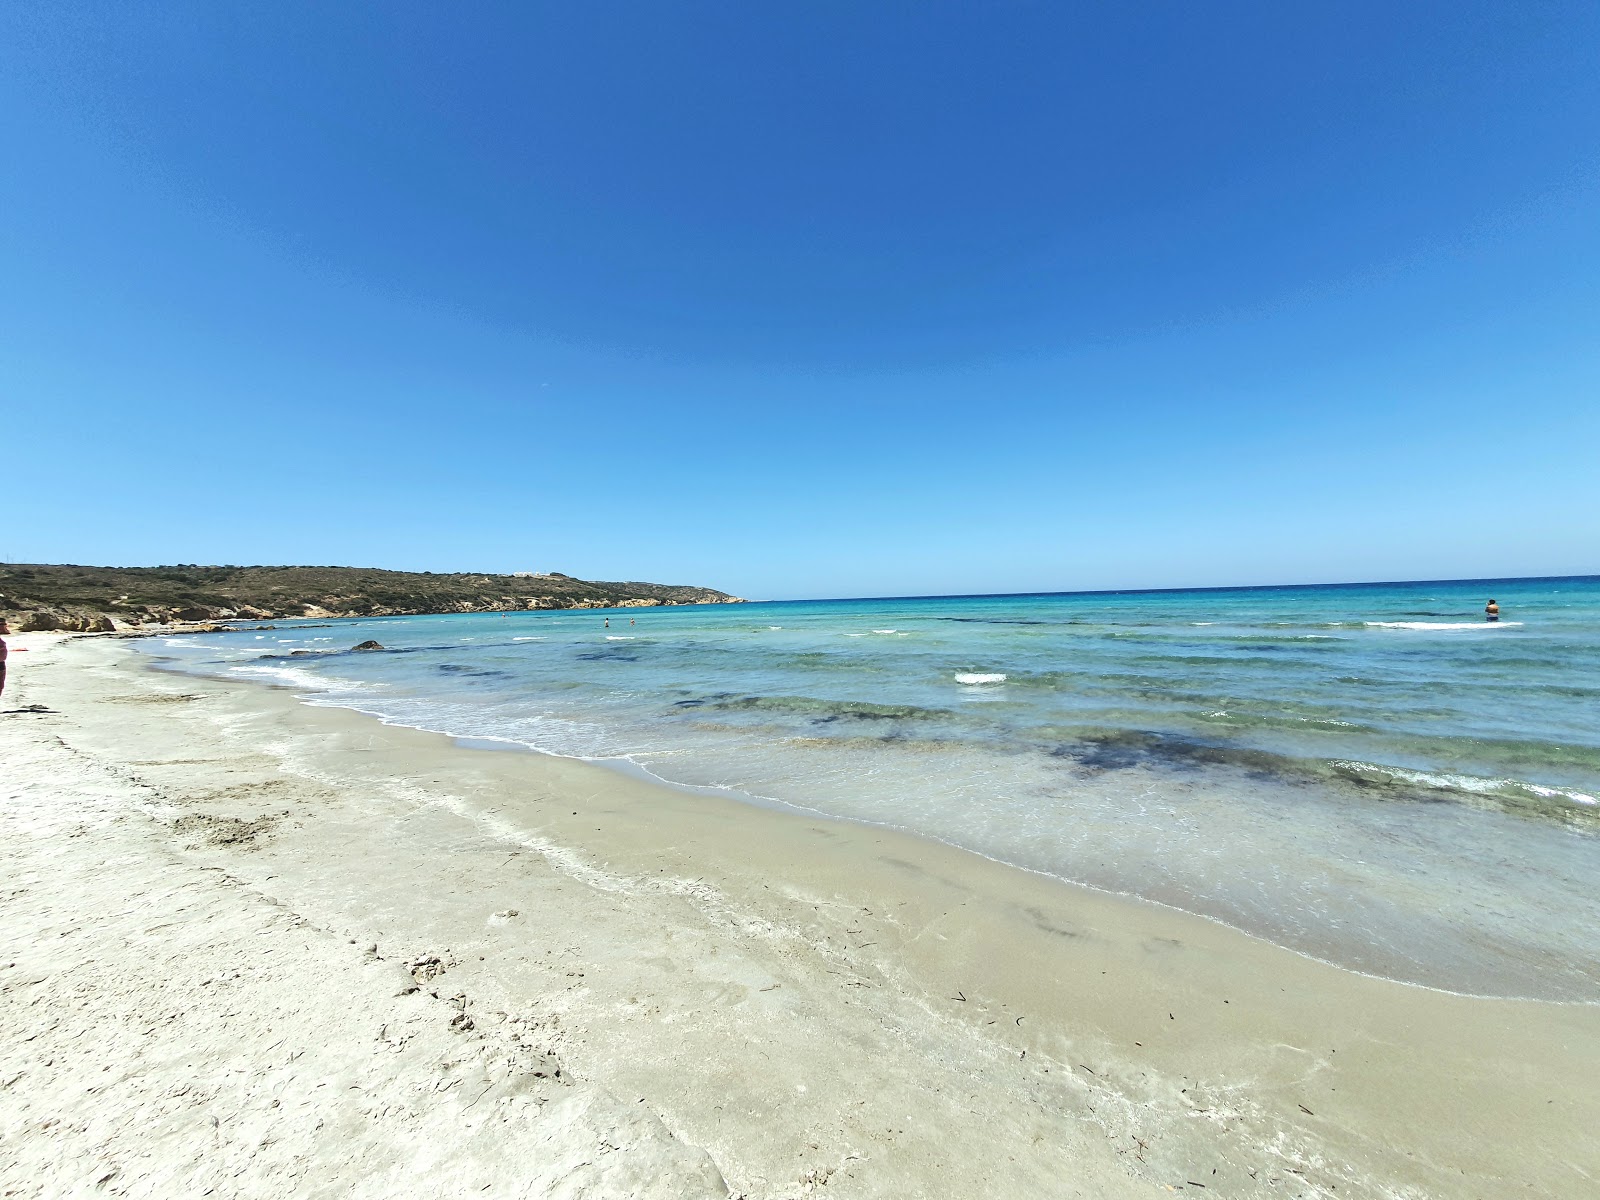 Kohilari beach'in fotoğrafı gri kum yüzey ile